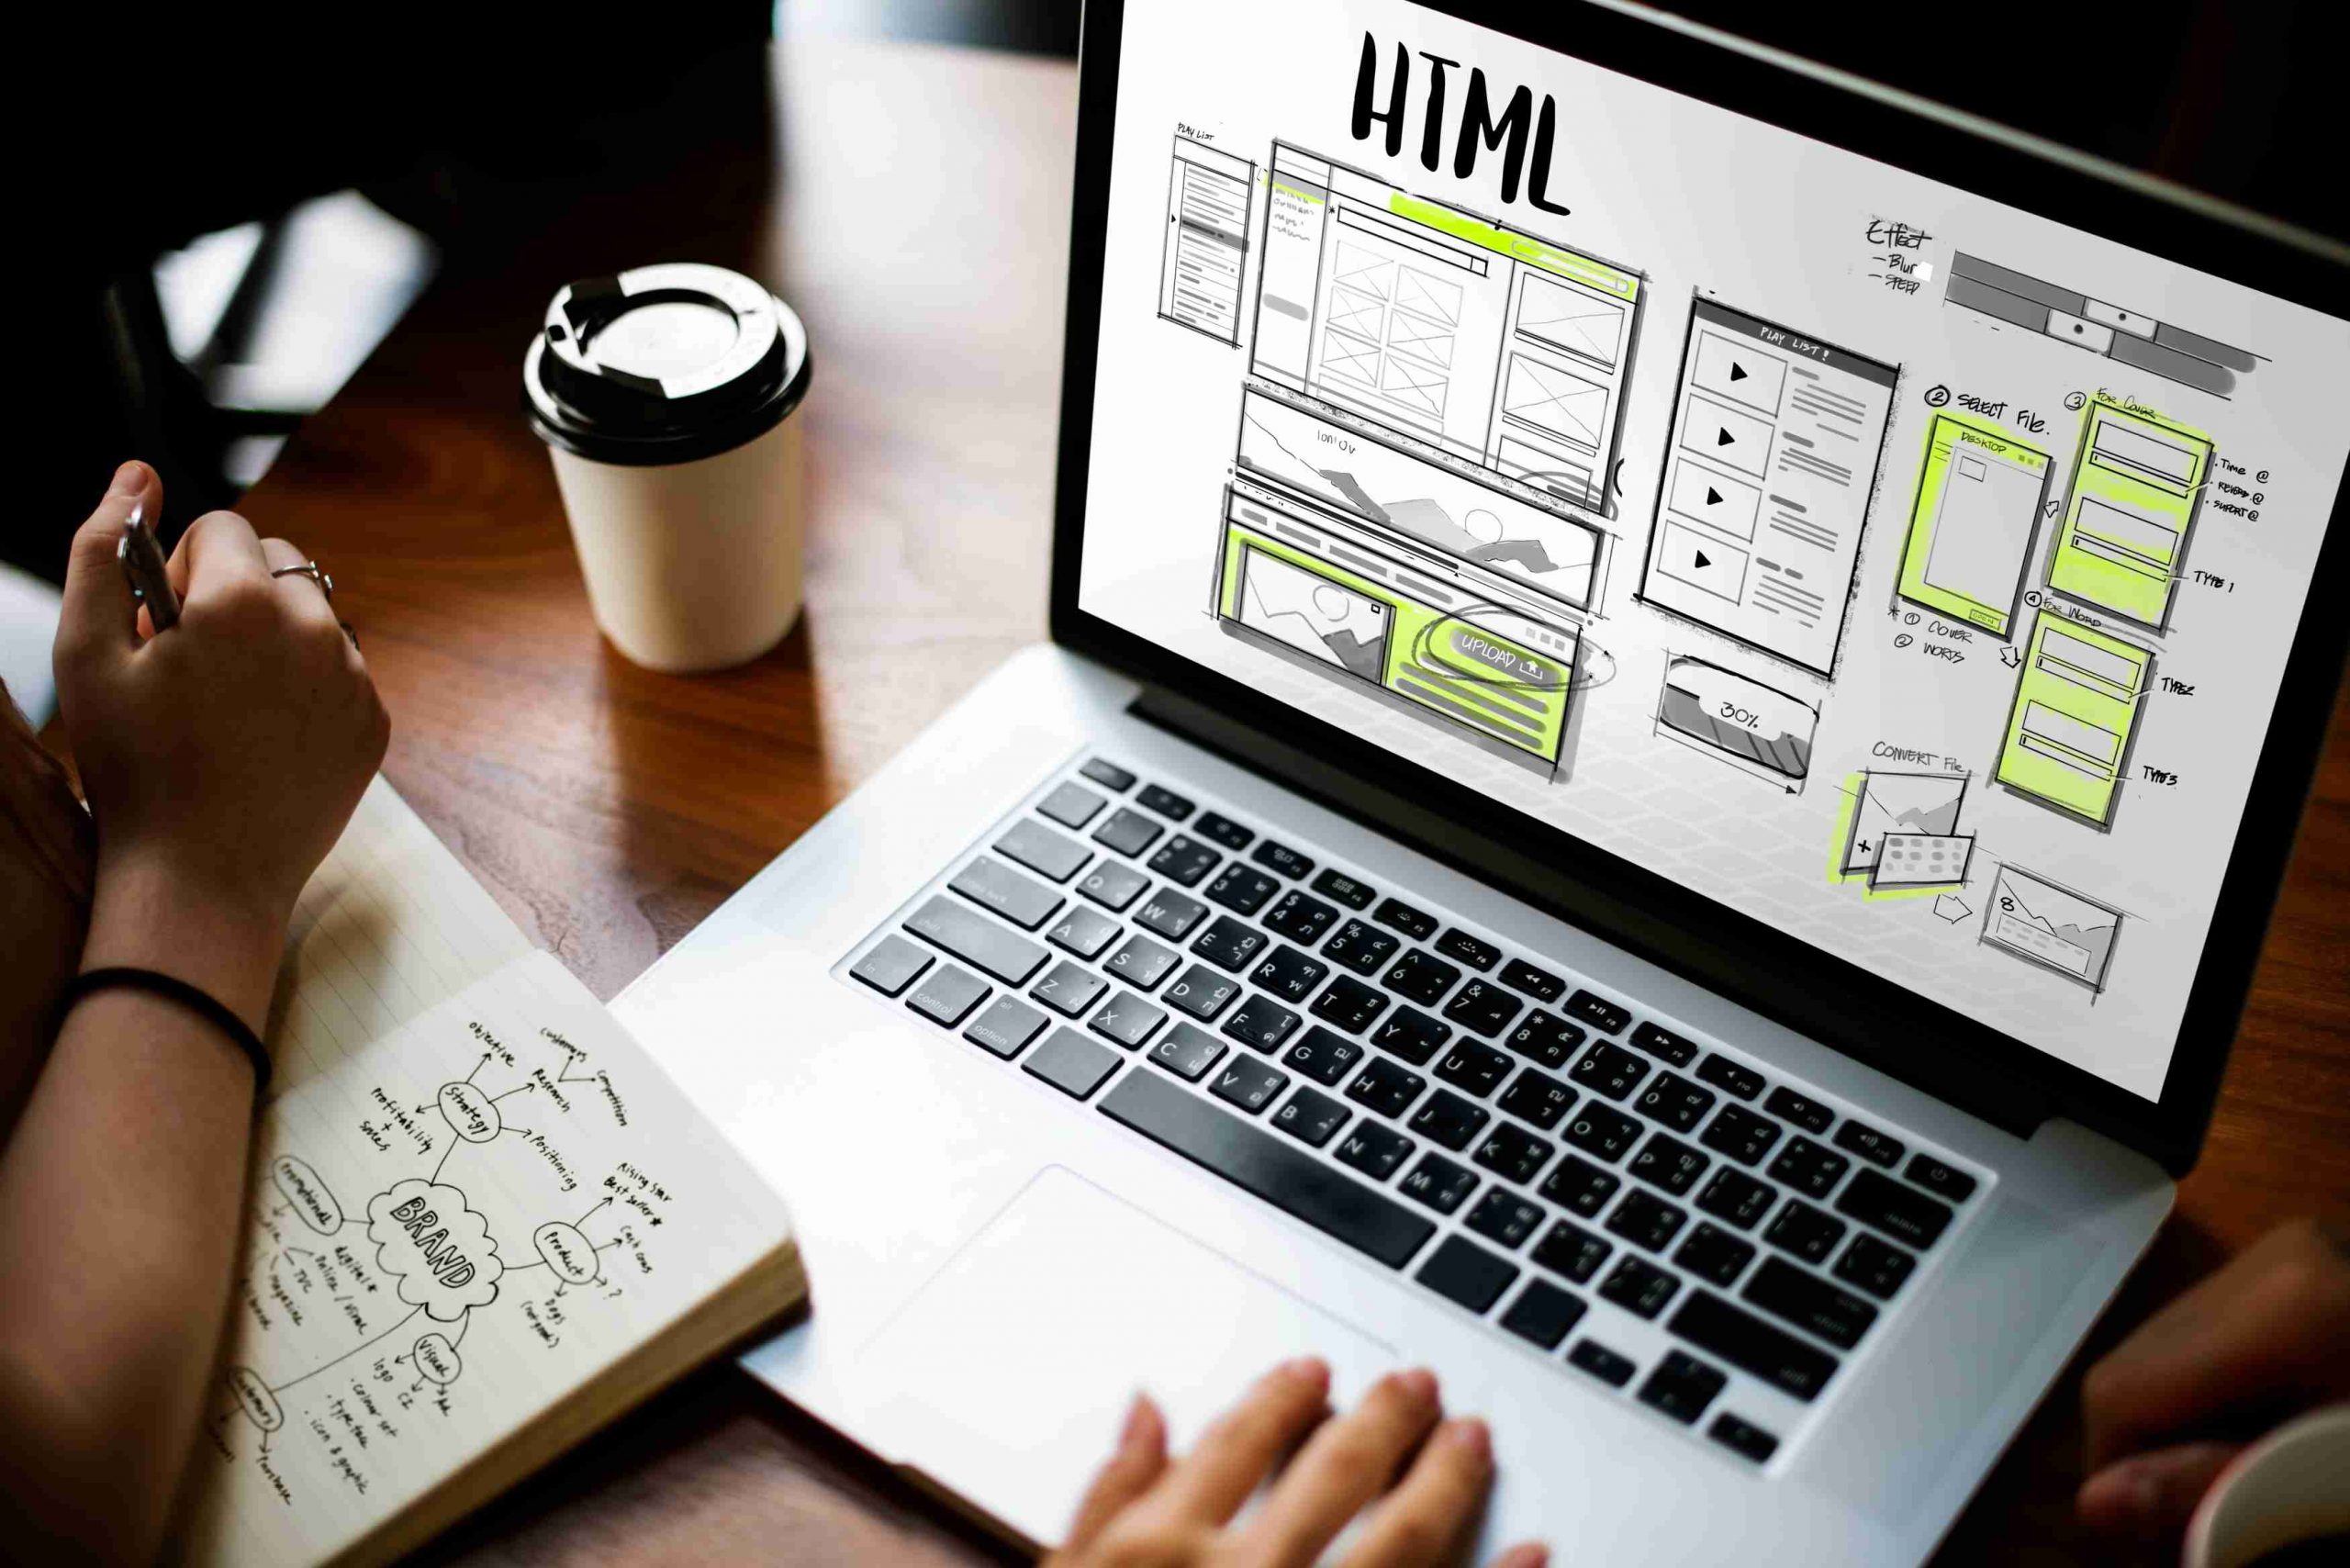 planejamento para criar um site com HTML